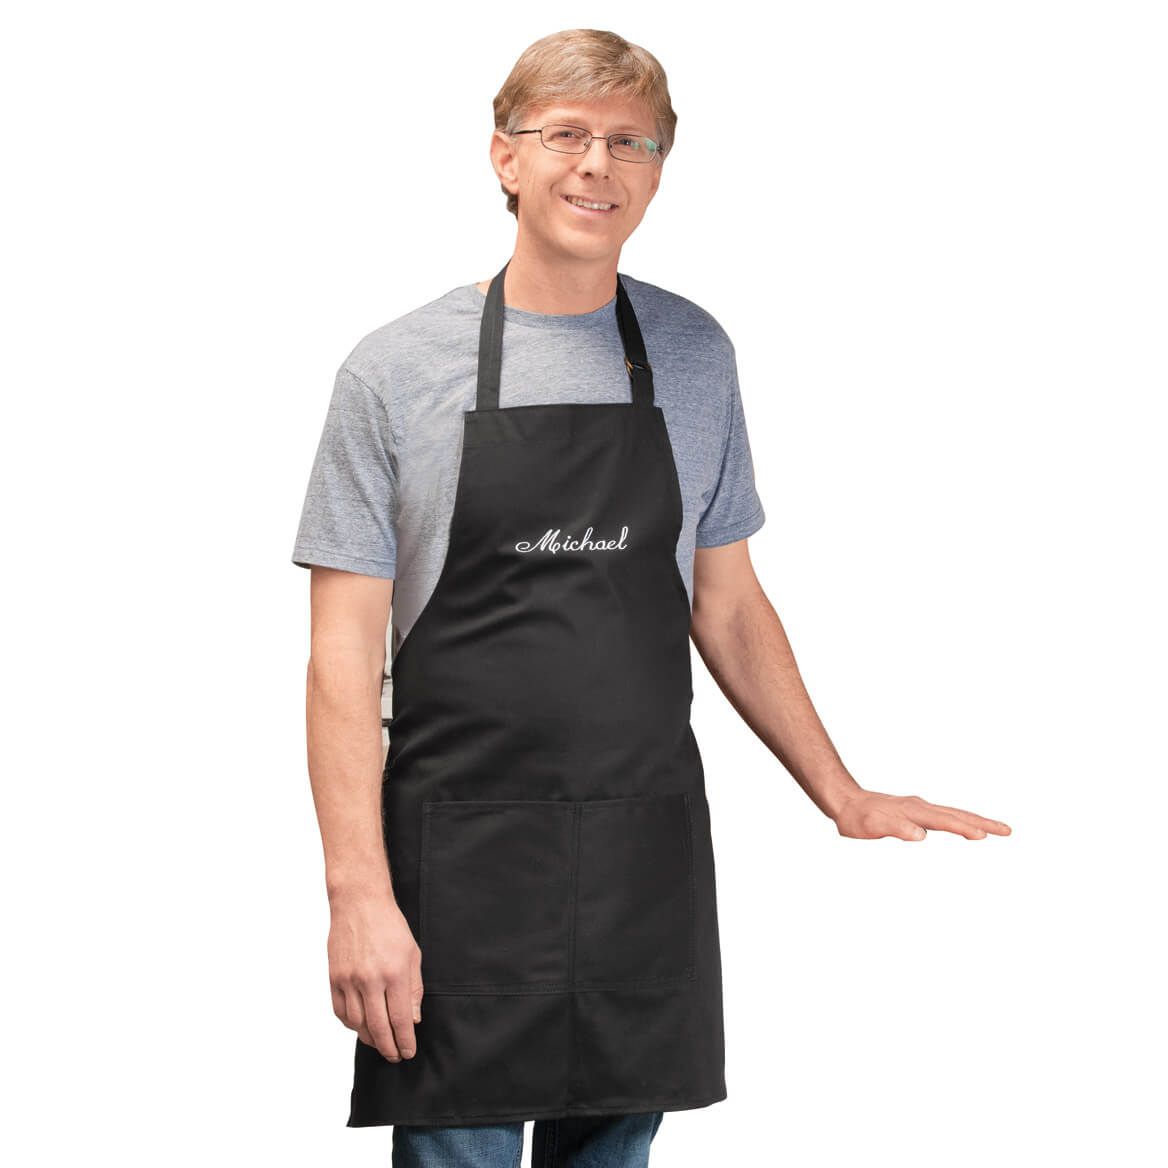 Personalized Chef Apron By Sawyer Creek Studio™​ + '-' + 311015